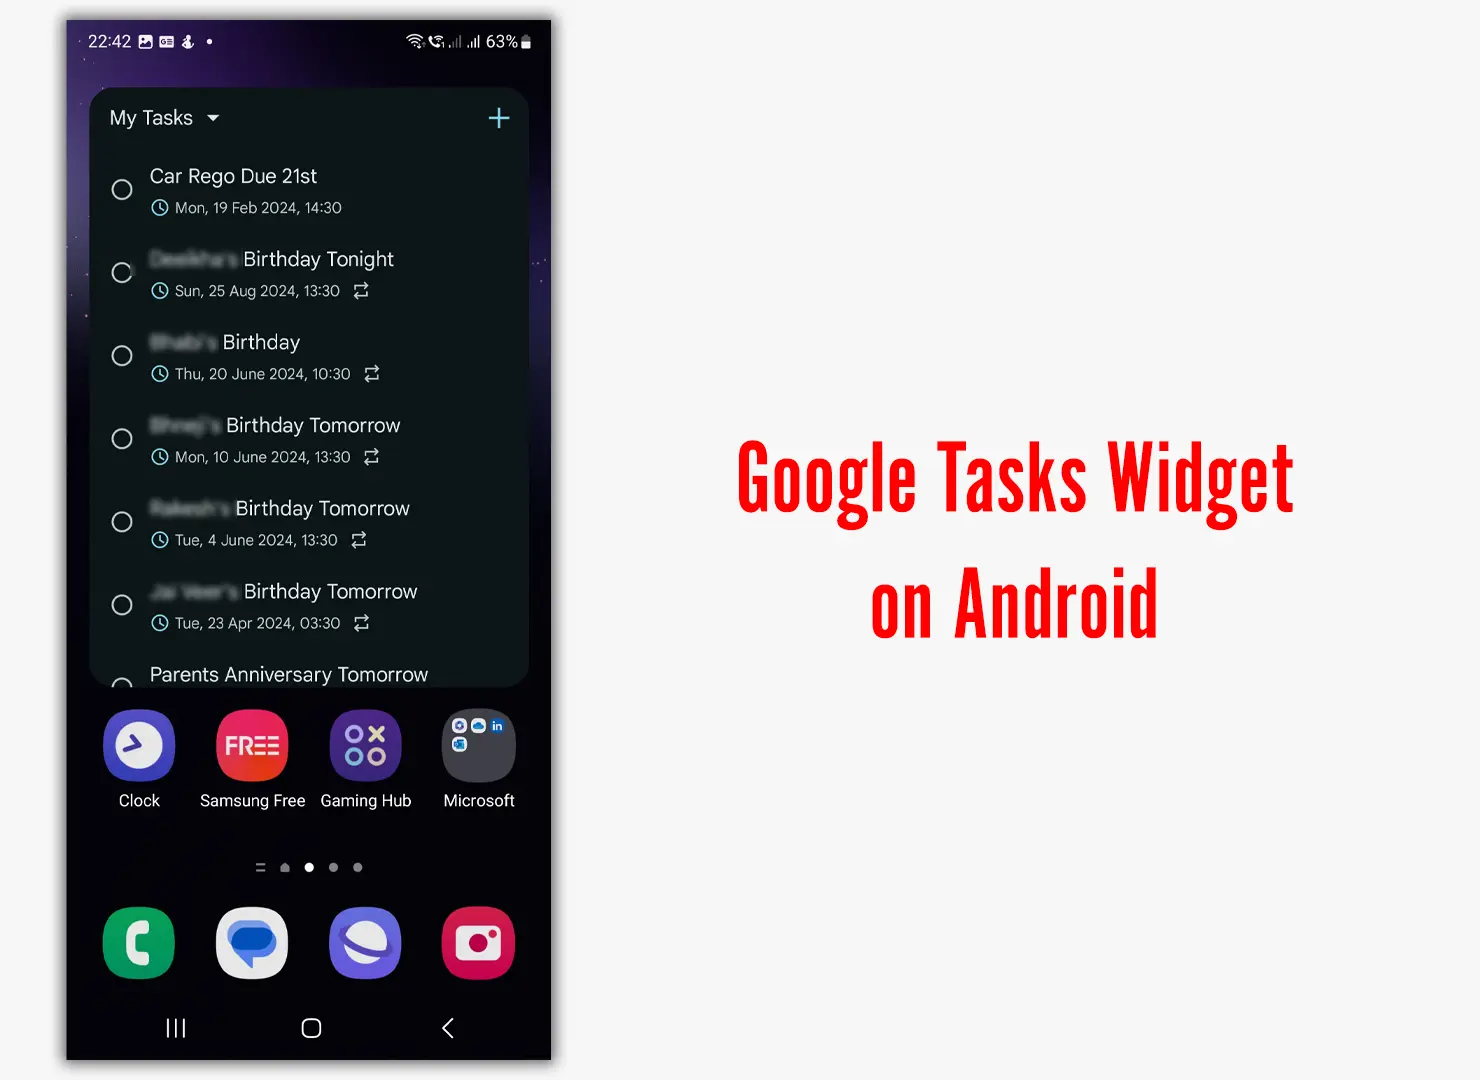 Google Tasks Widget on Android